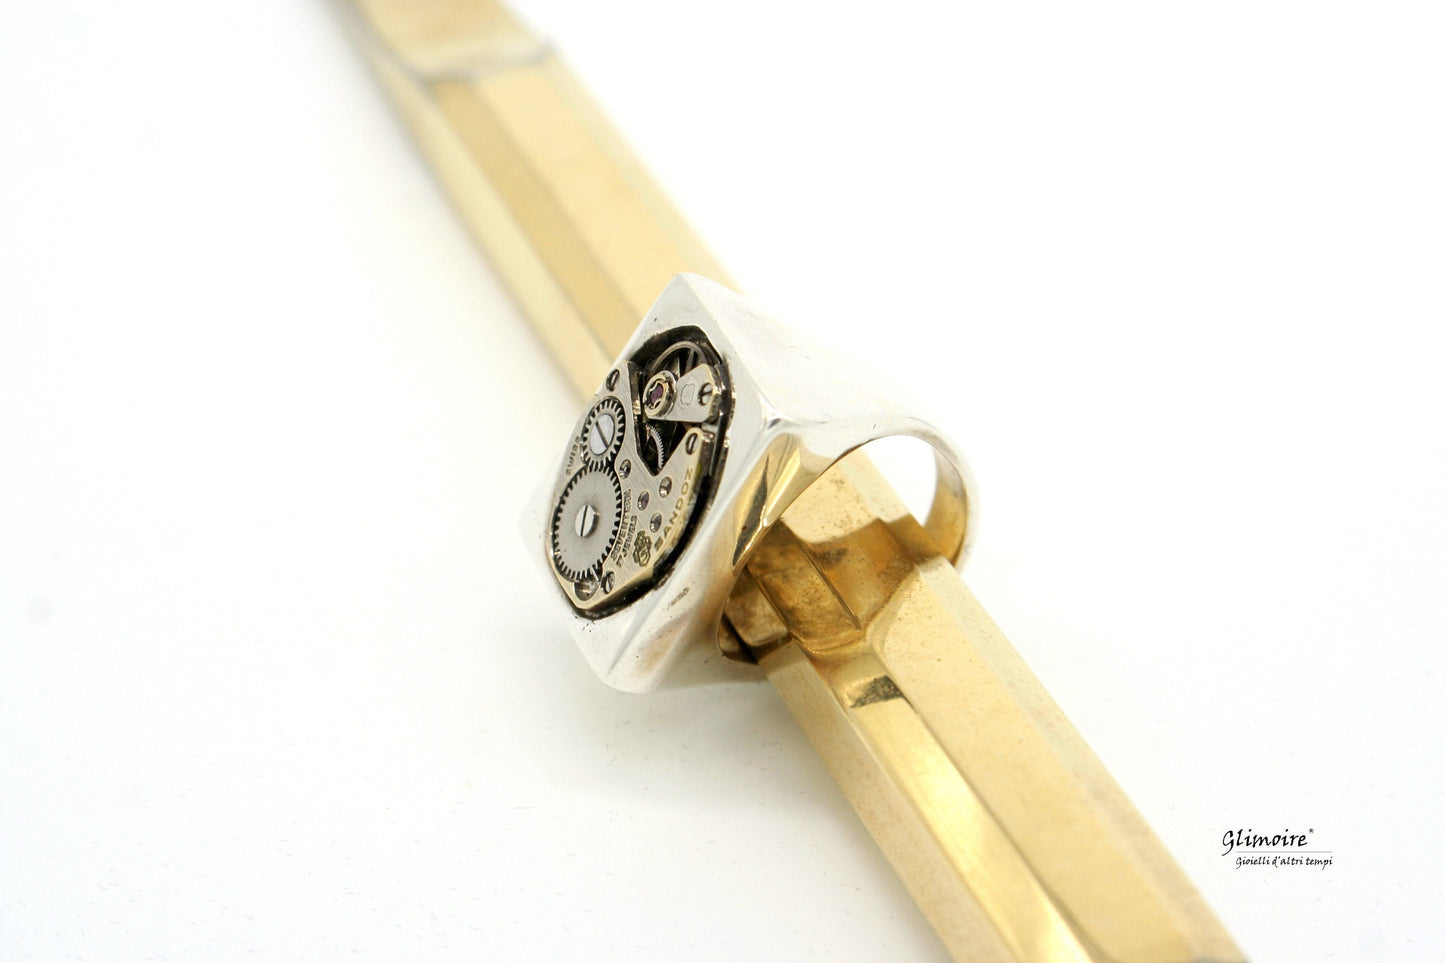 Anello meccanismo di orologio d'epoca in argento 925 , realizzato con un movimento di orologio d'epoca #204 - Glimoire